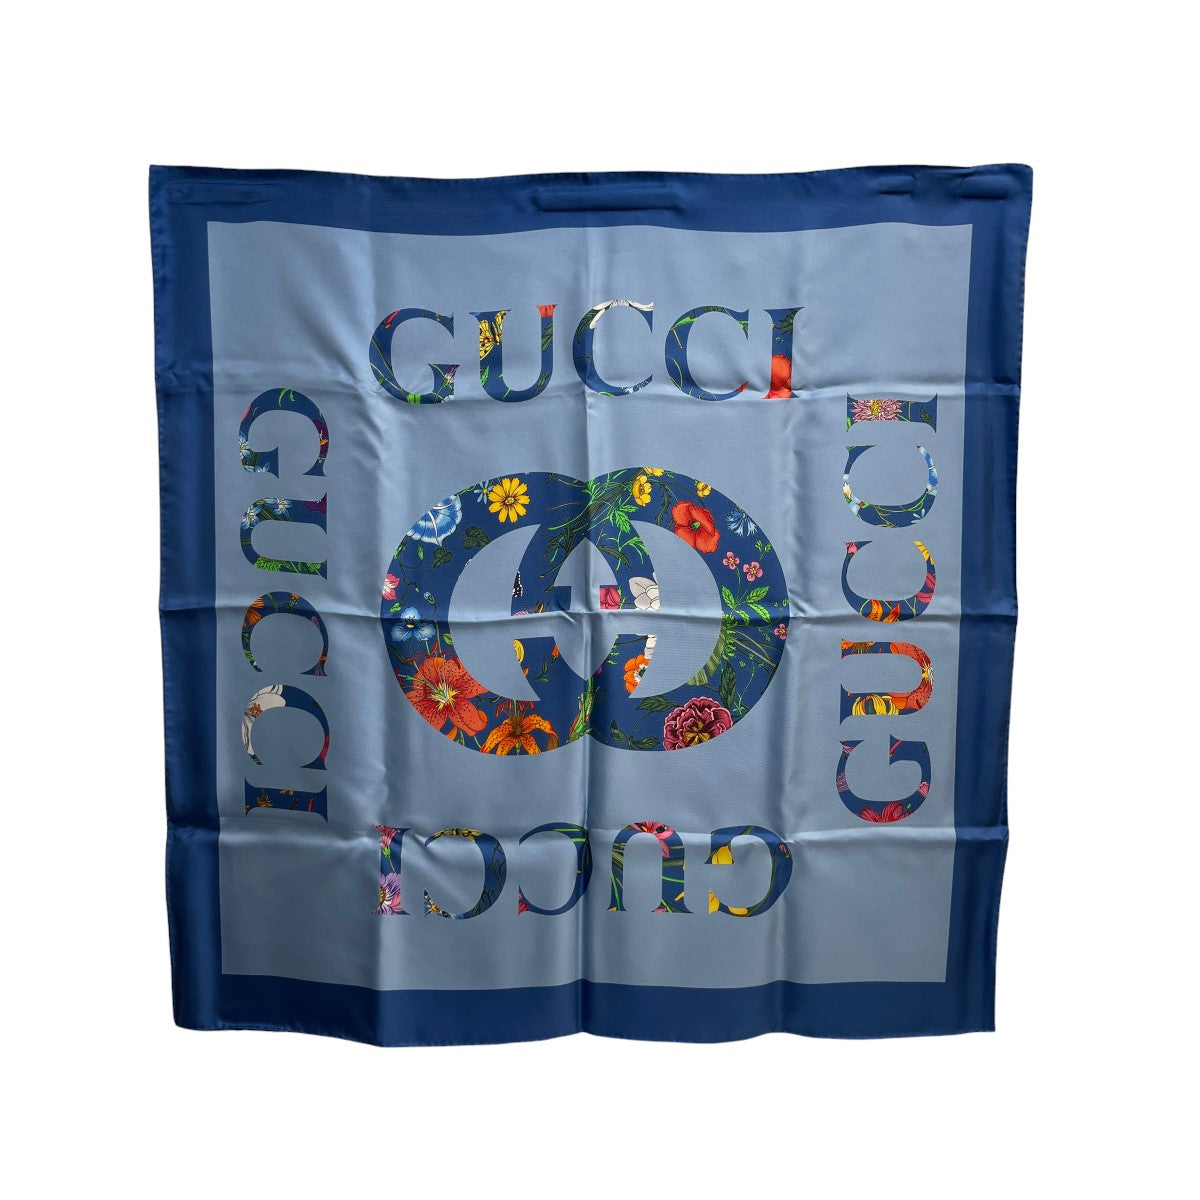 GUCCI(グッチ) フローラ ヴィンテージ ロゴプリント シルク スカーフ